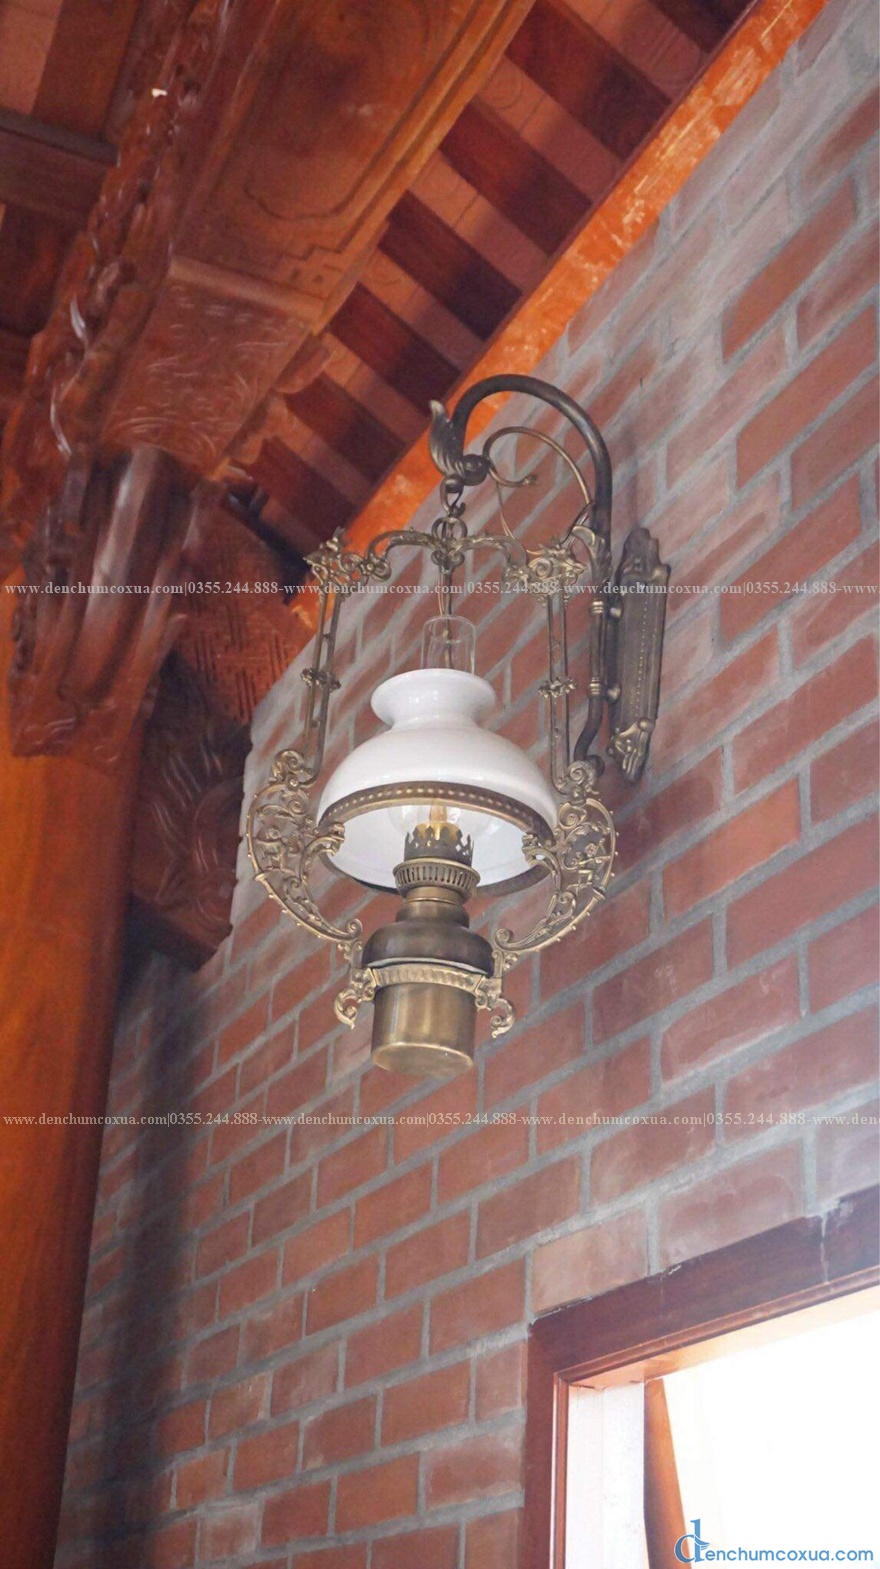 Mẫu đèn ốp tường nhà gỗ đẹp đến mê lòng